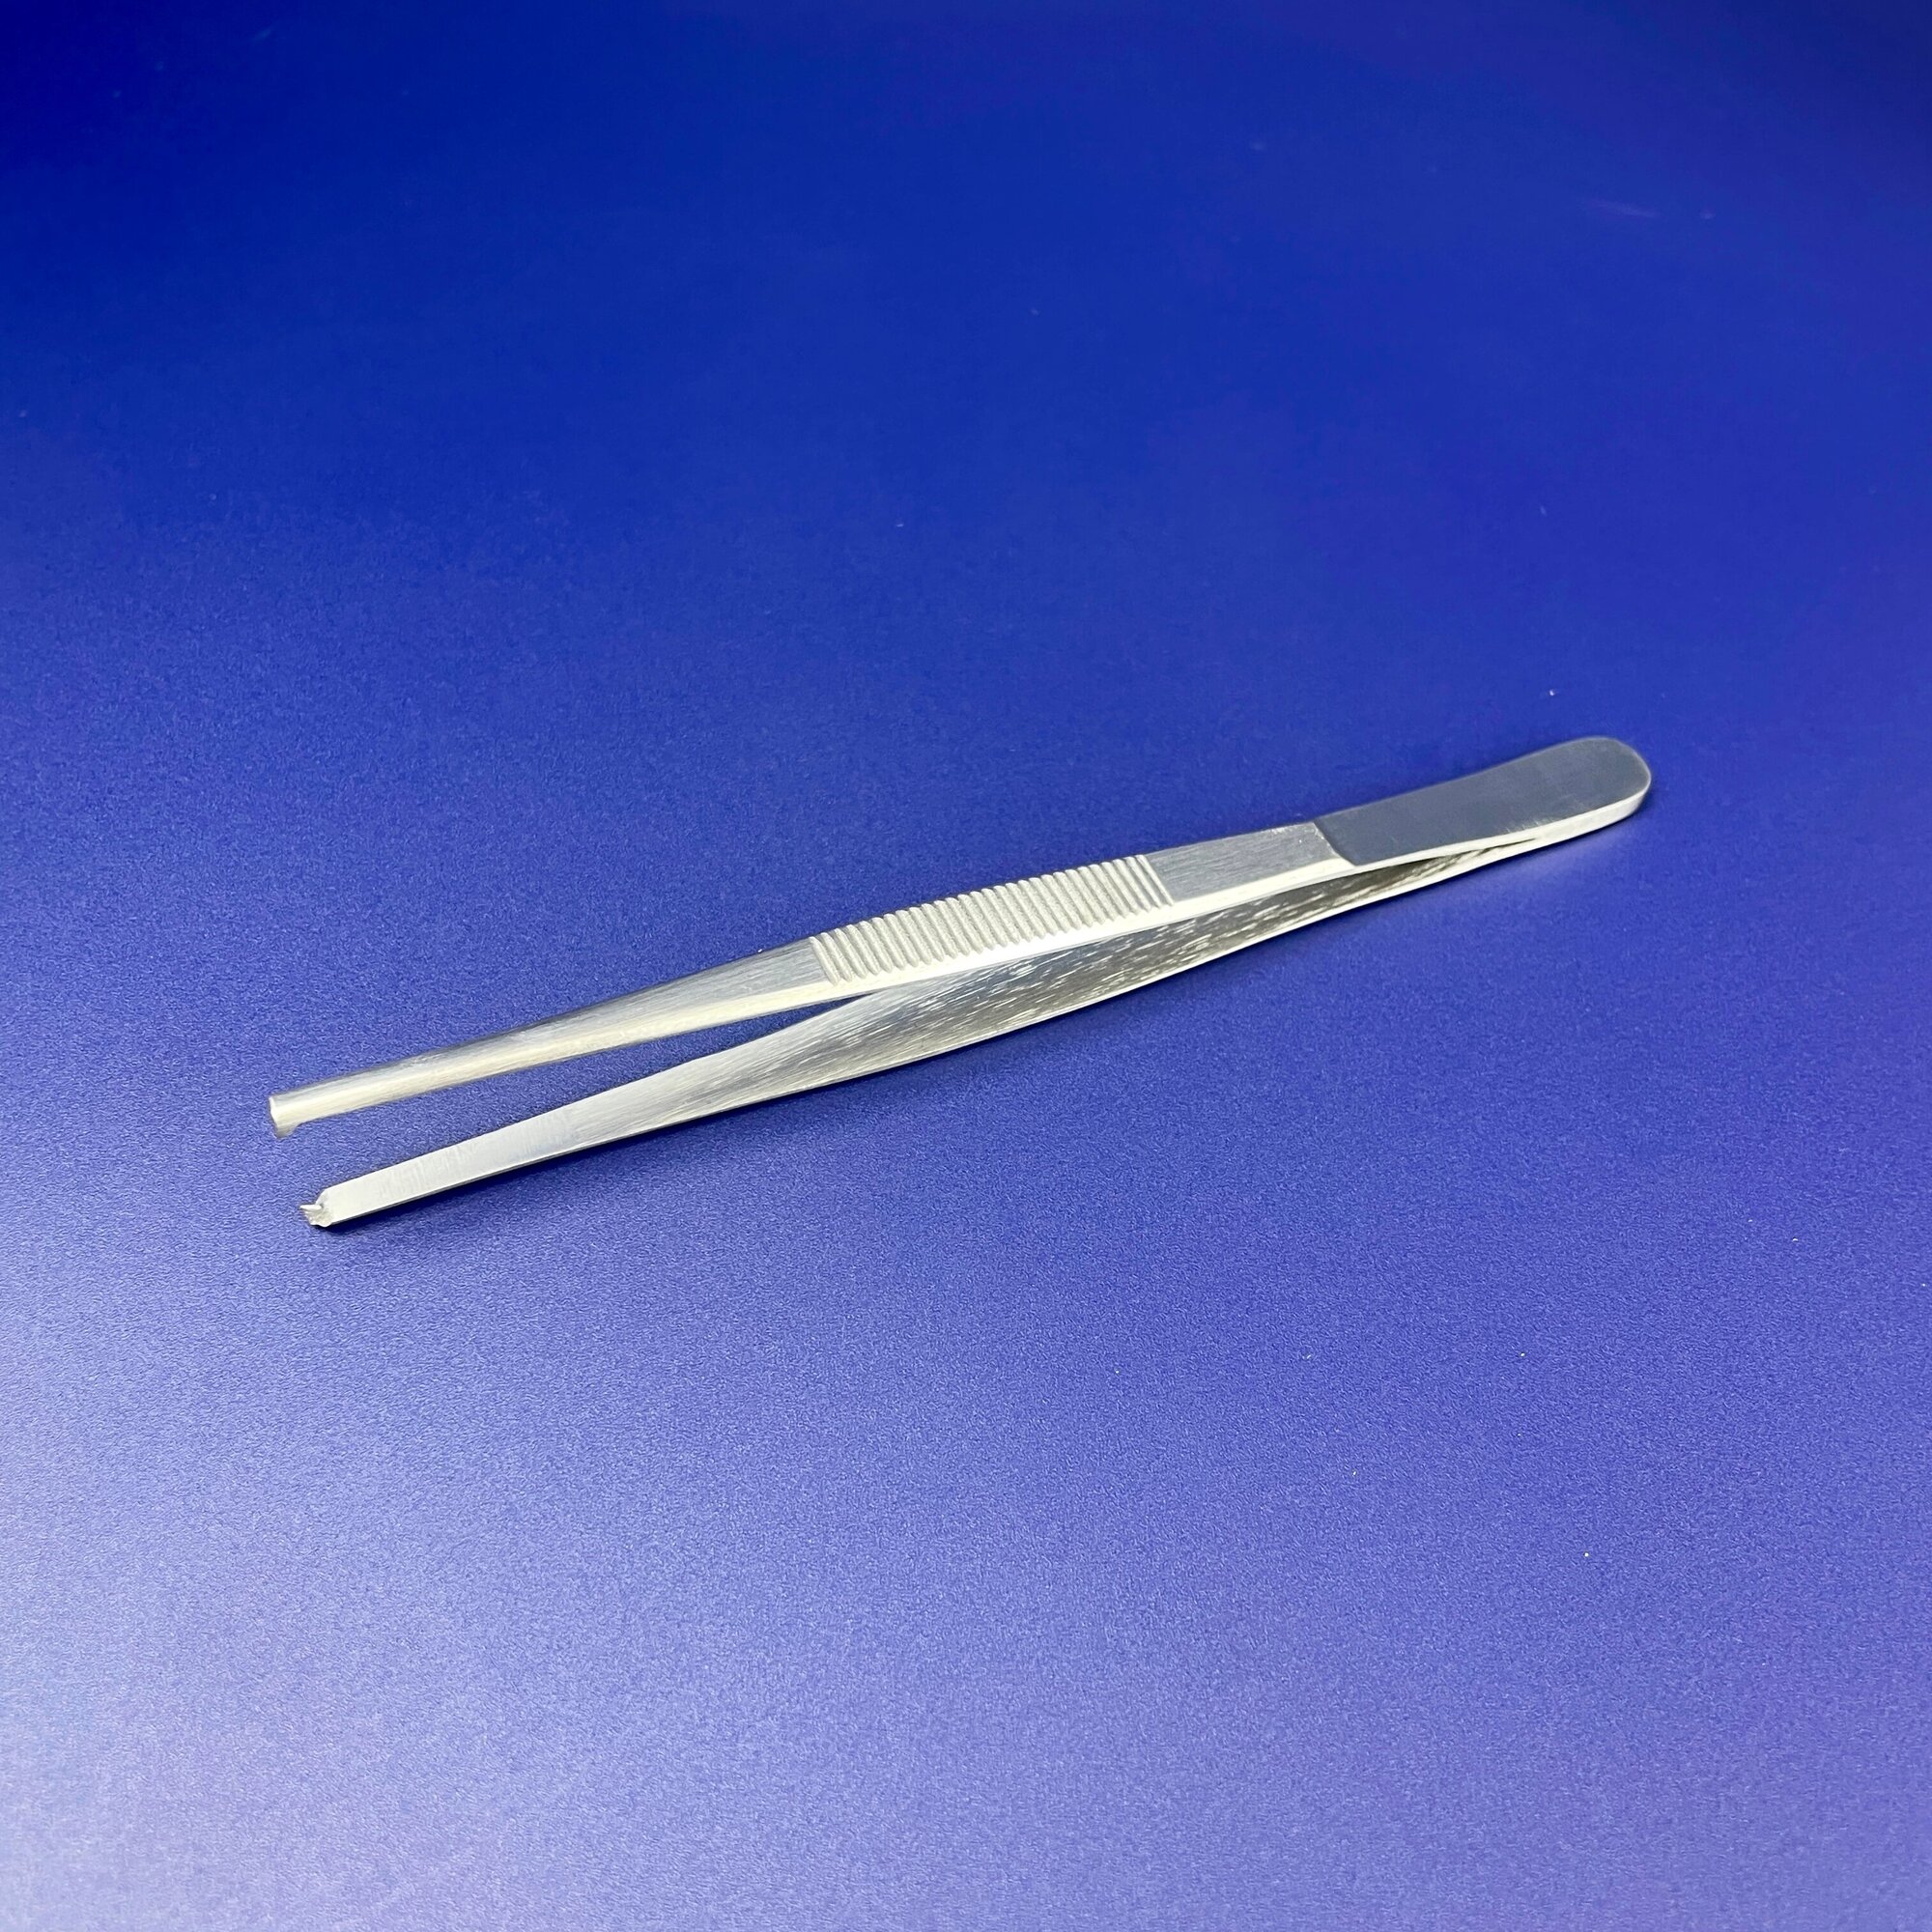 Scalpel Med Пинцет хирургический общего назначения 140х2,9мм. Хирургические инструменты для шитья.